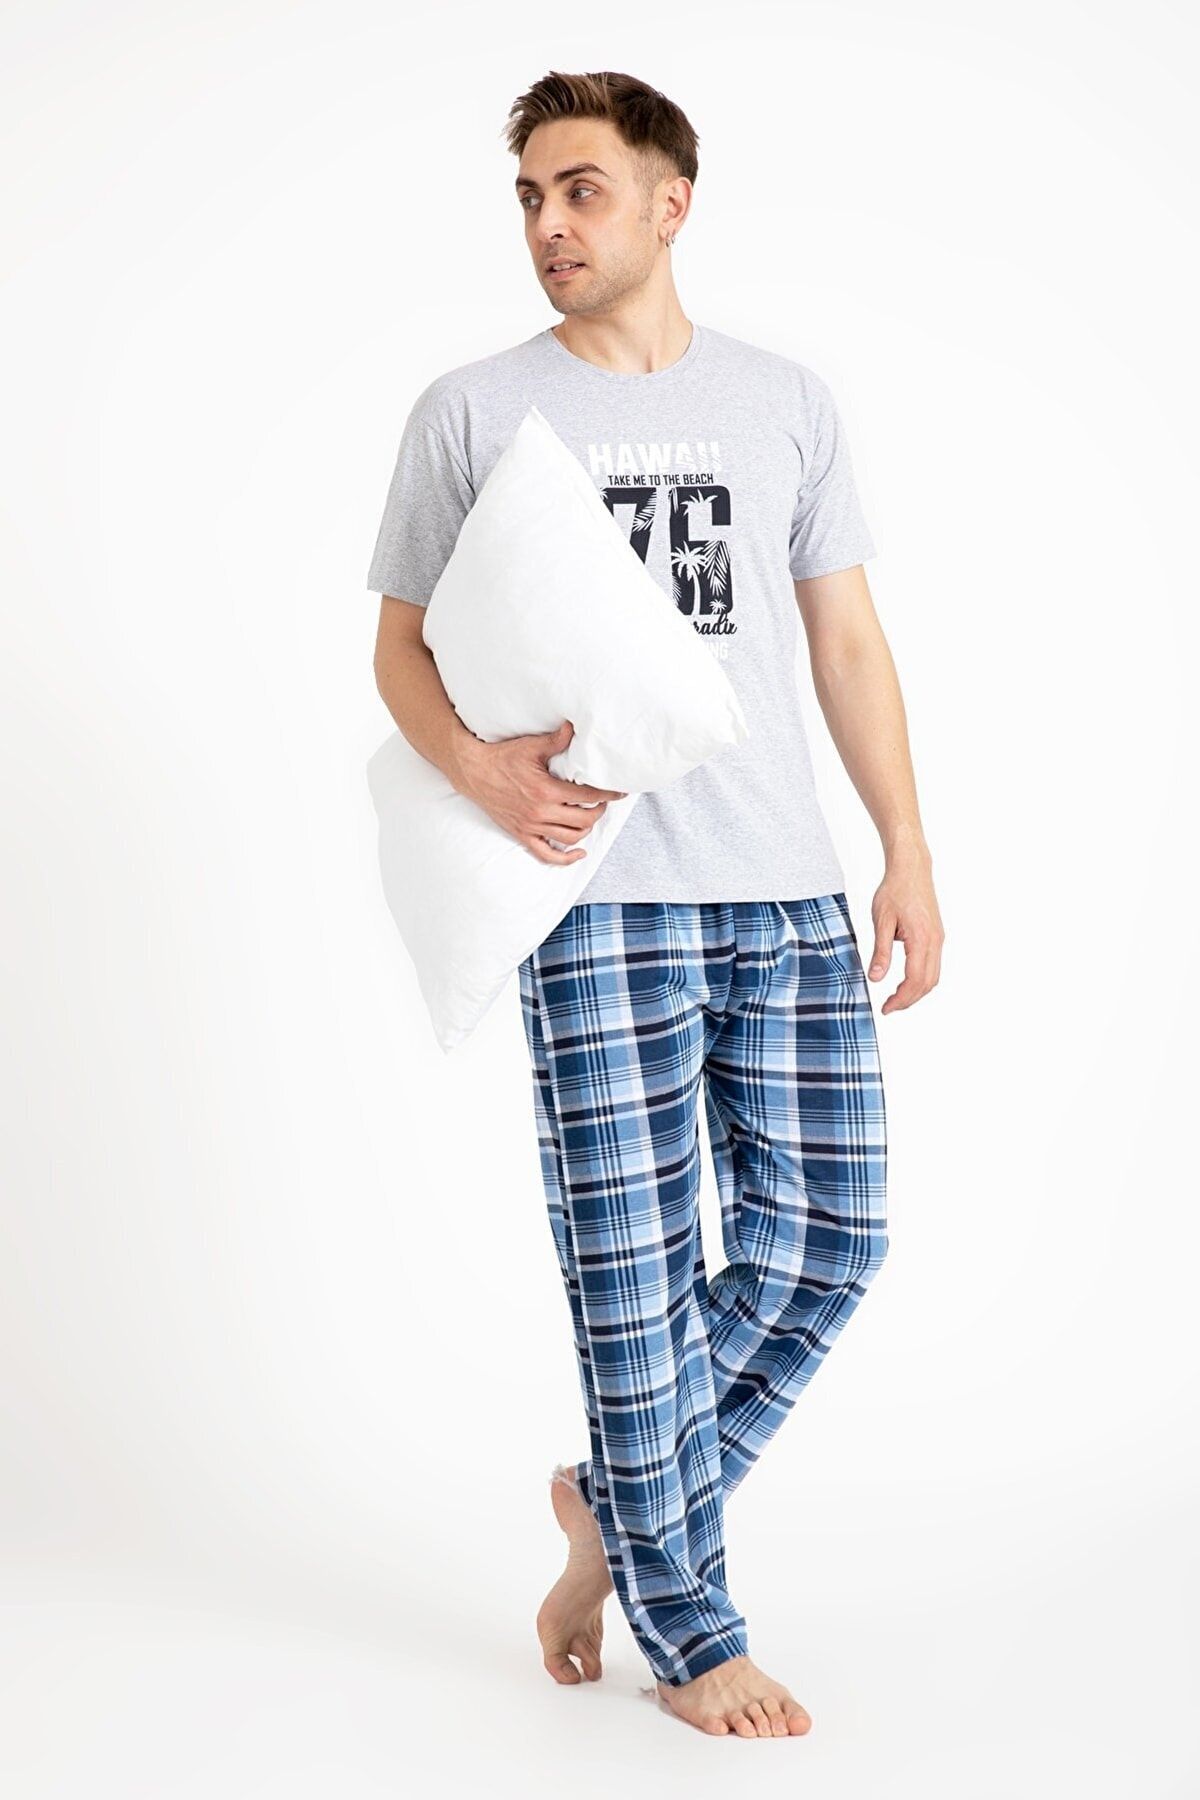 TAMPAP Erkek Baskılı Pijama Takımı Kısa Kollu